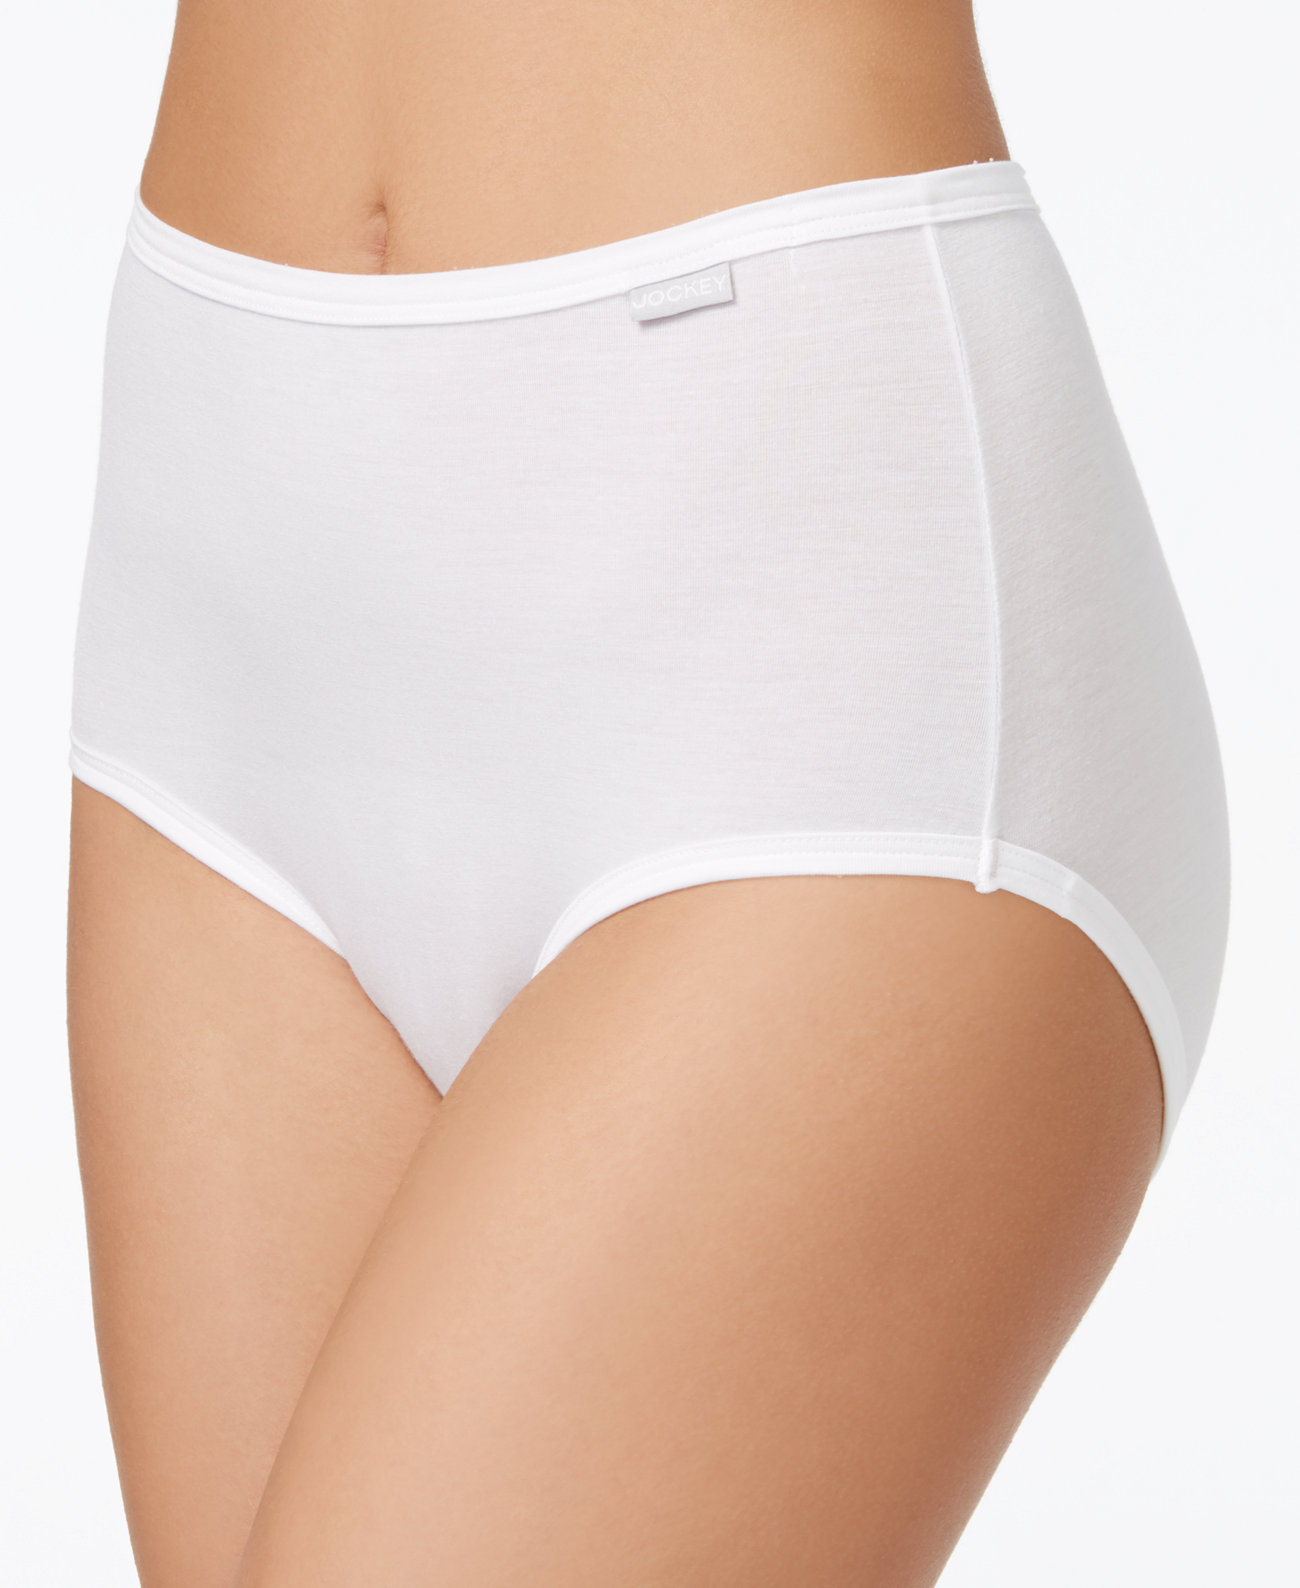 Нижнее белье Elance Supersoft Brief Underwear 2161, также доступно в расширенных размерах, создано для Macy's Jockey